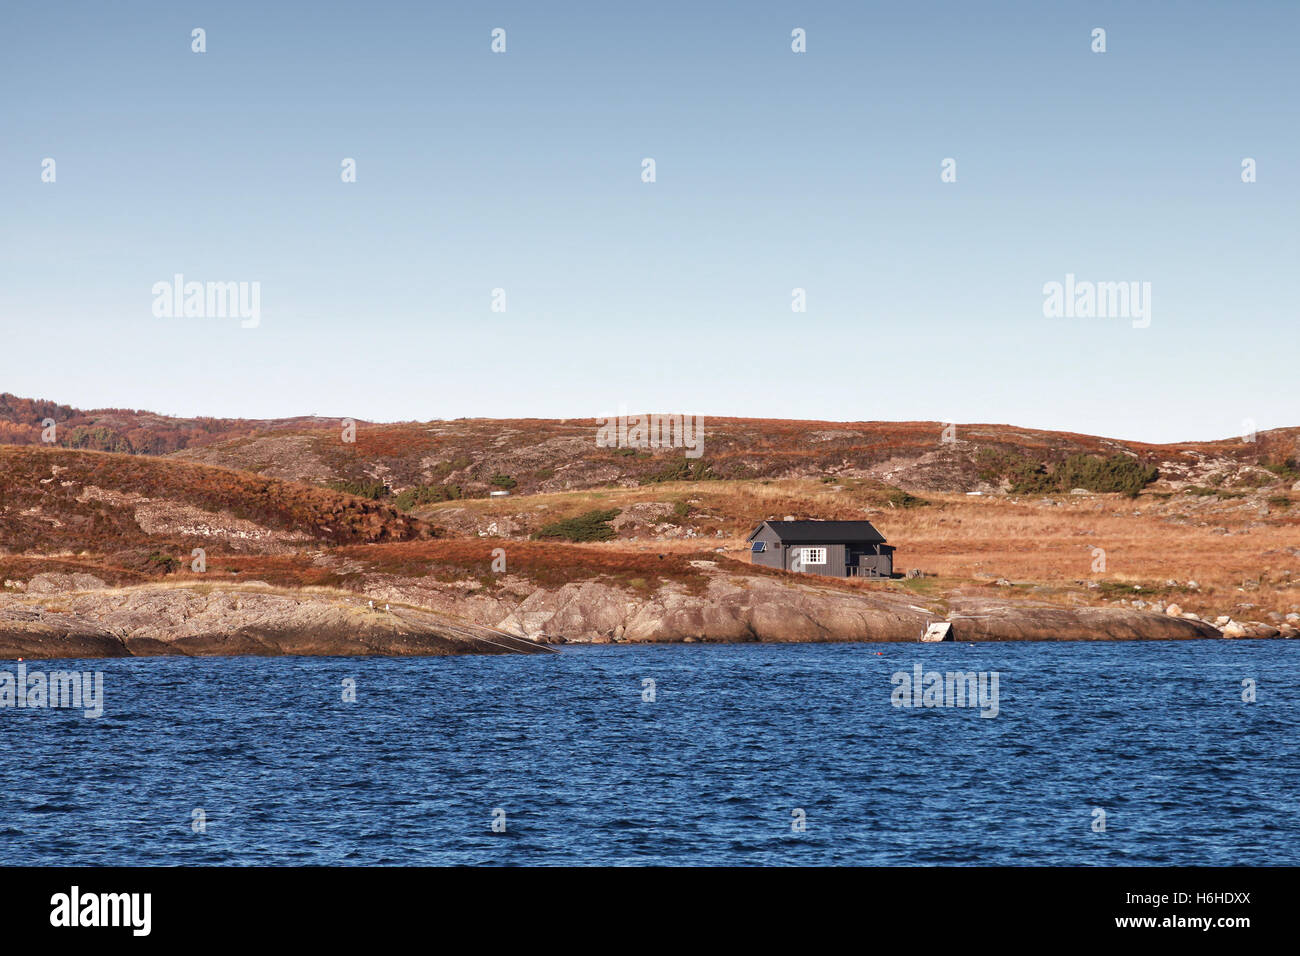 Petite maison en bois sur la côte rocheuse vide en Norvège Banque D'Images